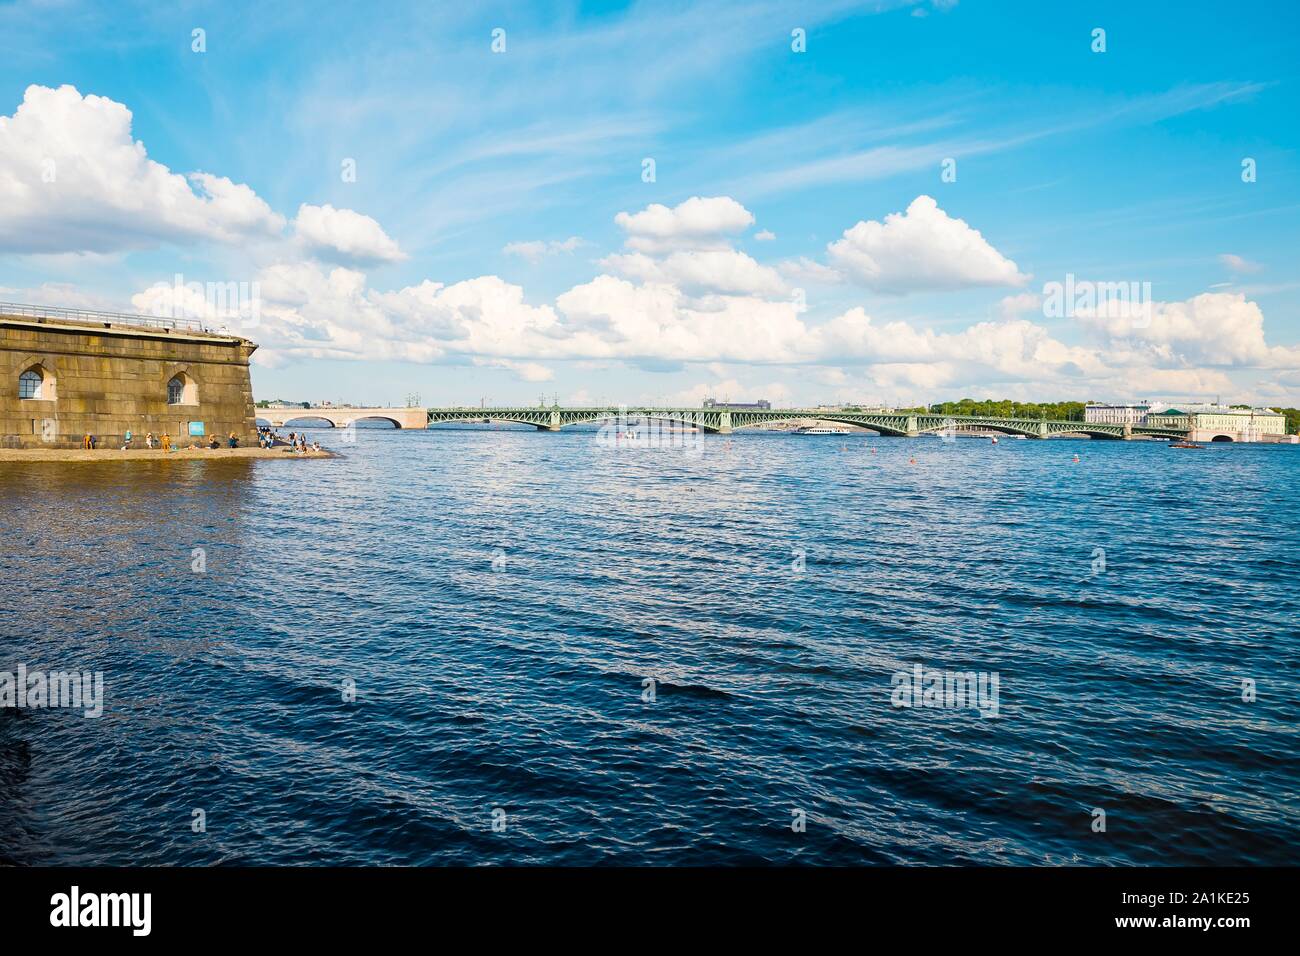 Saint-pétersbourg, Russie - le 7 juillet 2019 : vue sur Trinity Bridge - Pont Troitsky - Île de Lièvre Banque D'Images